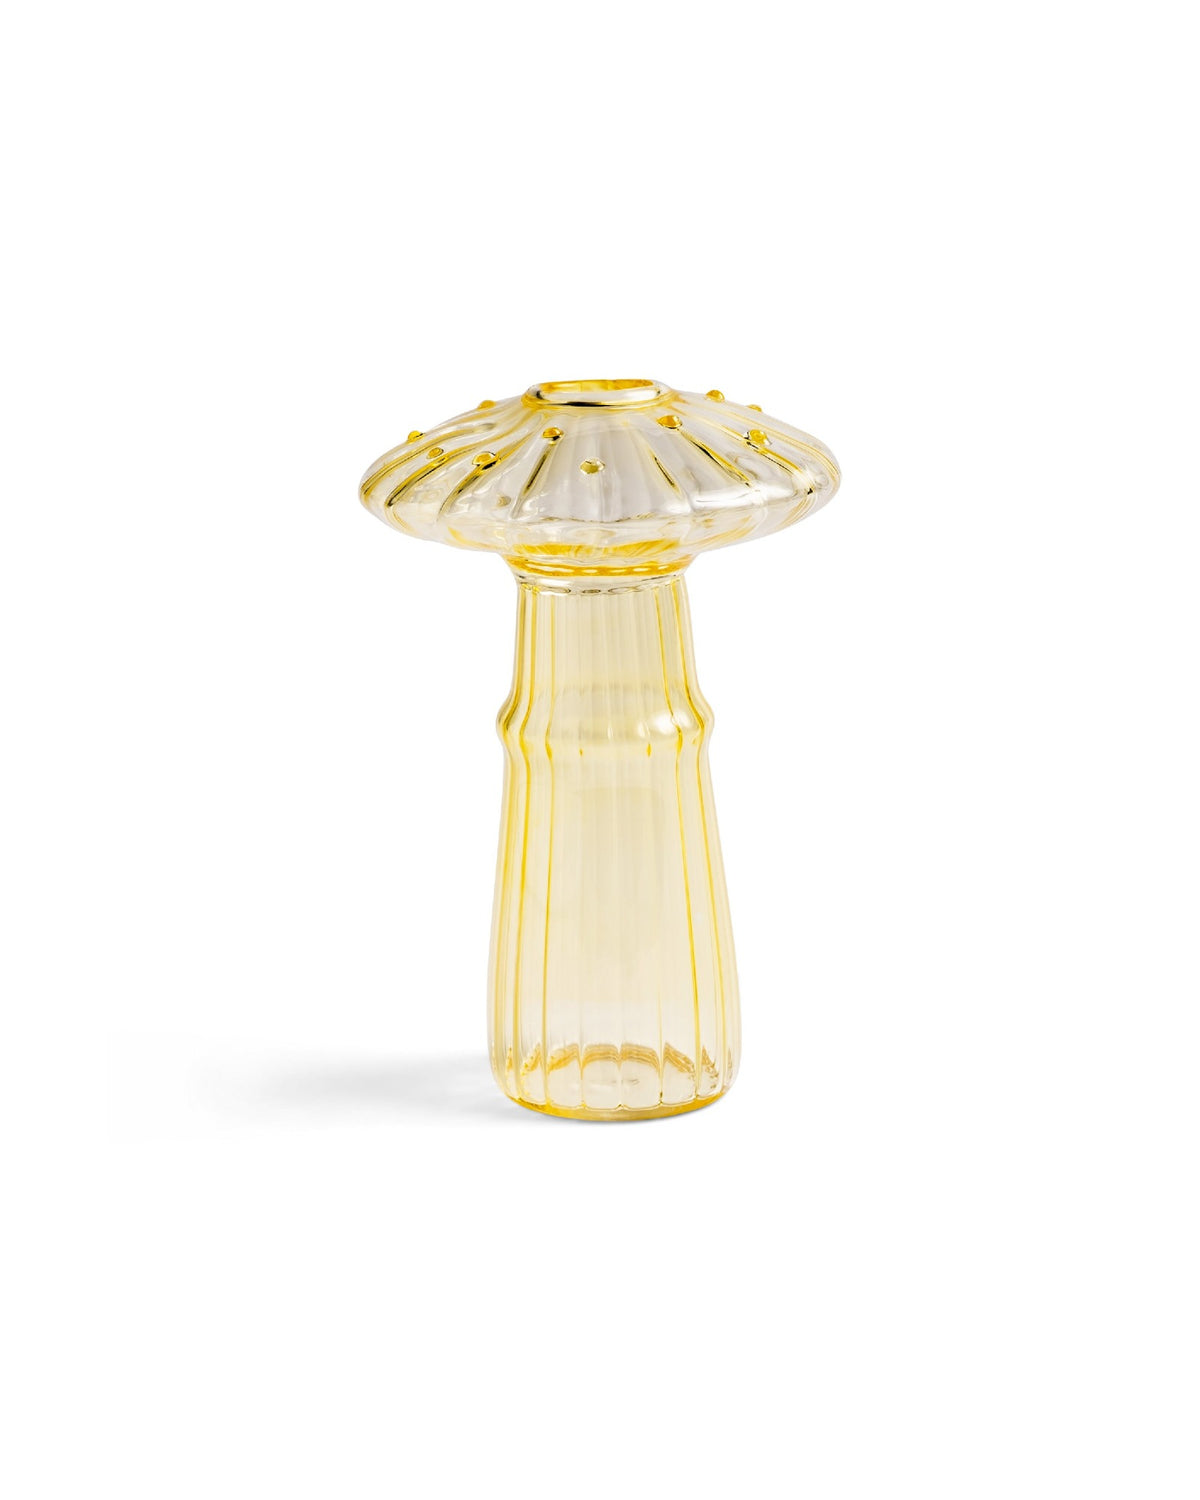 Mushroom Vases | Undisclosed